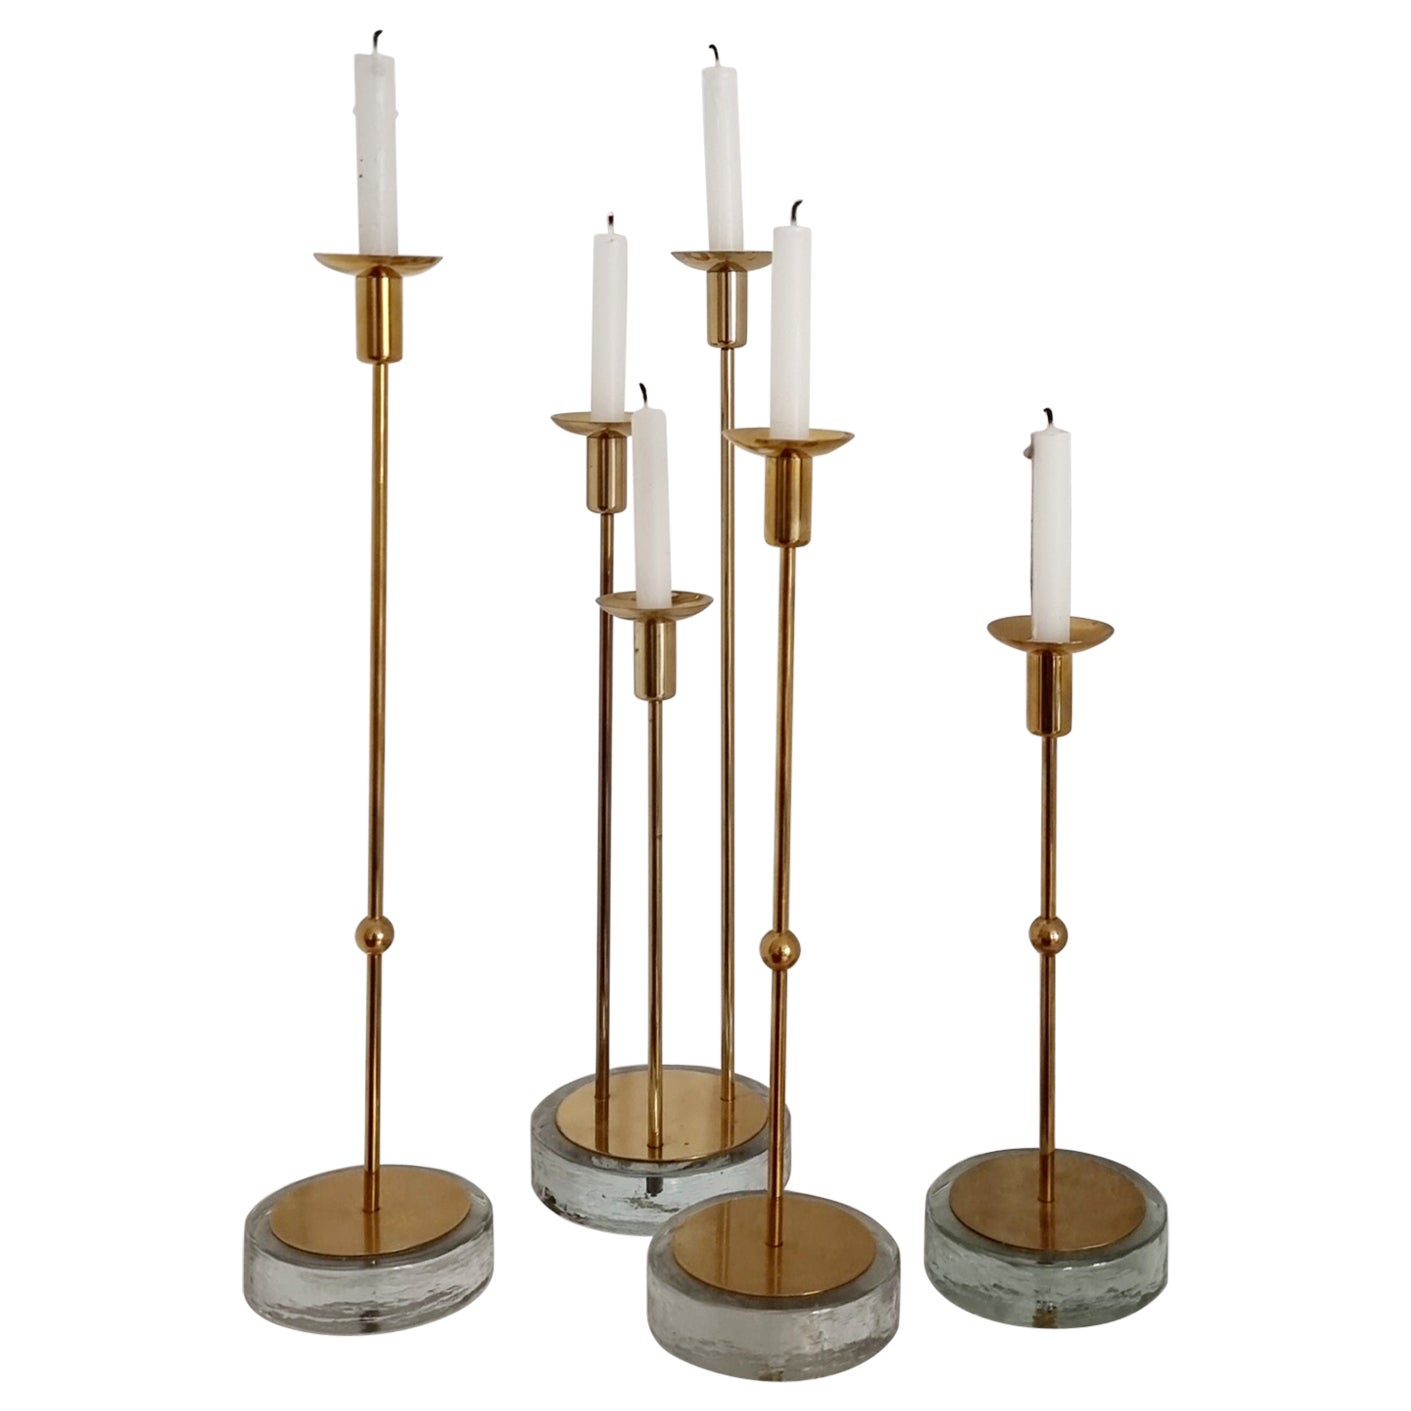 Gunnar Ander, Cuatro candelabros, latón y cristal, Ystad Metall, Modernidad sueca